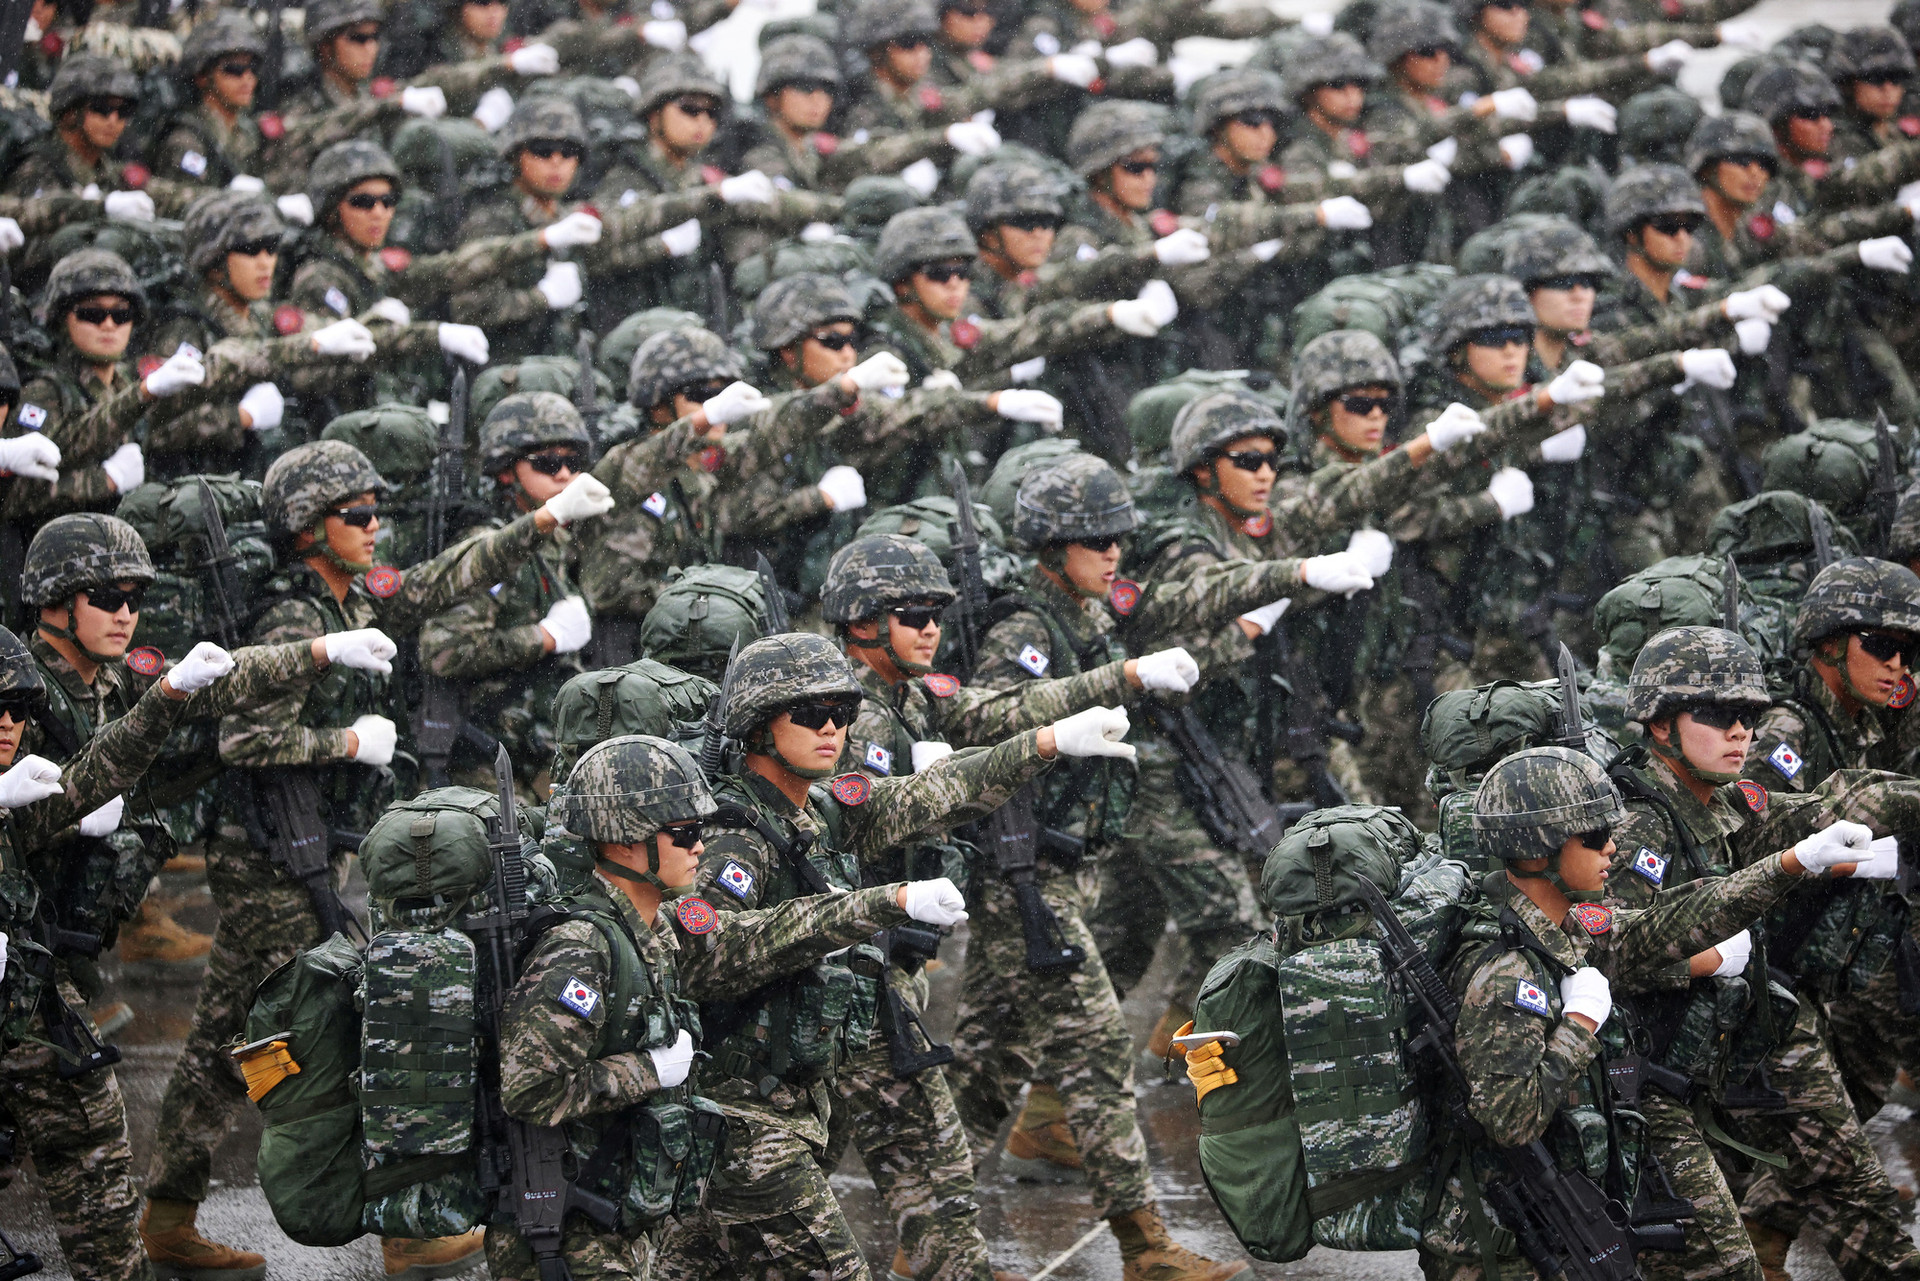 Binh sĩ Hàn Quốc duyệt binh tại căn cứ không quân Seoul ở Seongnam ngày 26-9 - Ảnh: REUTERS